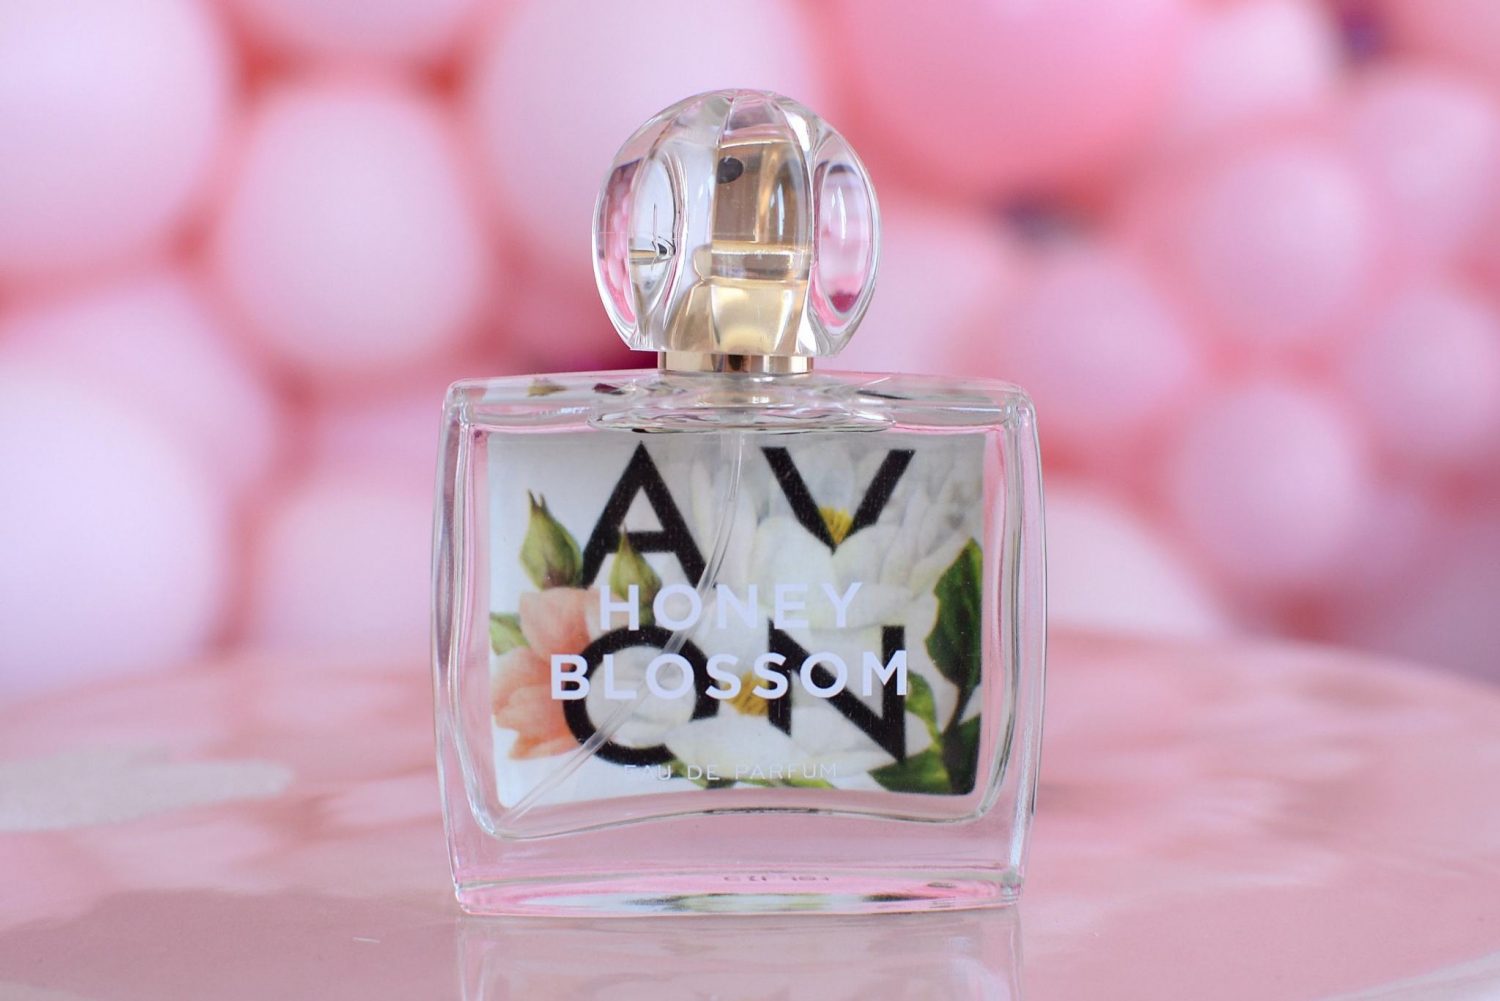 Avon Flourish Honey Blossom Eau de Parfum